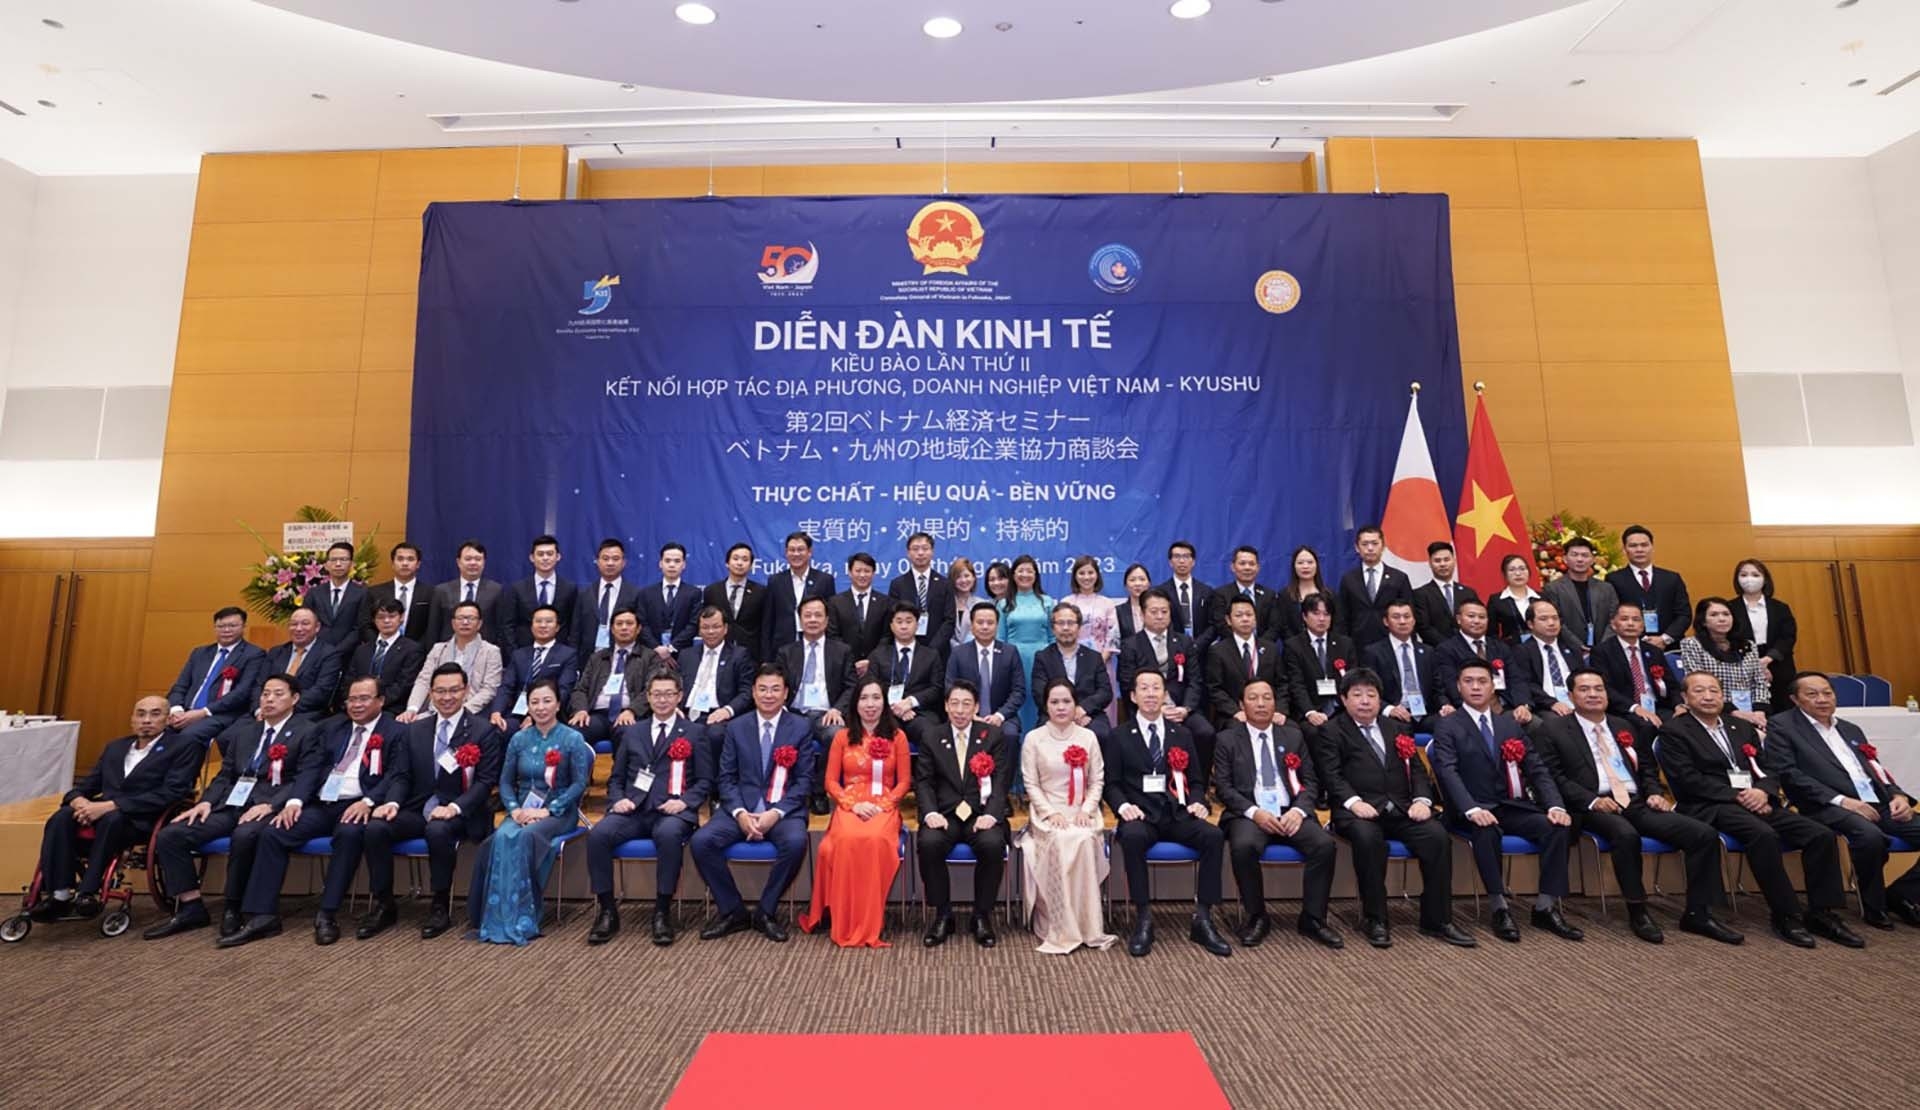 海外侨胞经济论坛旨在促进地方、越南企业和在全球范围内的越南企业家的合作